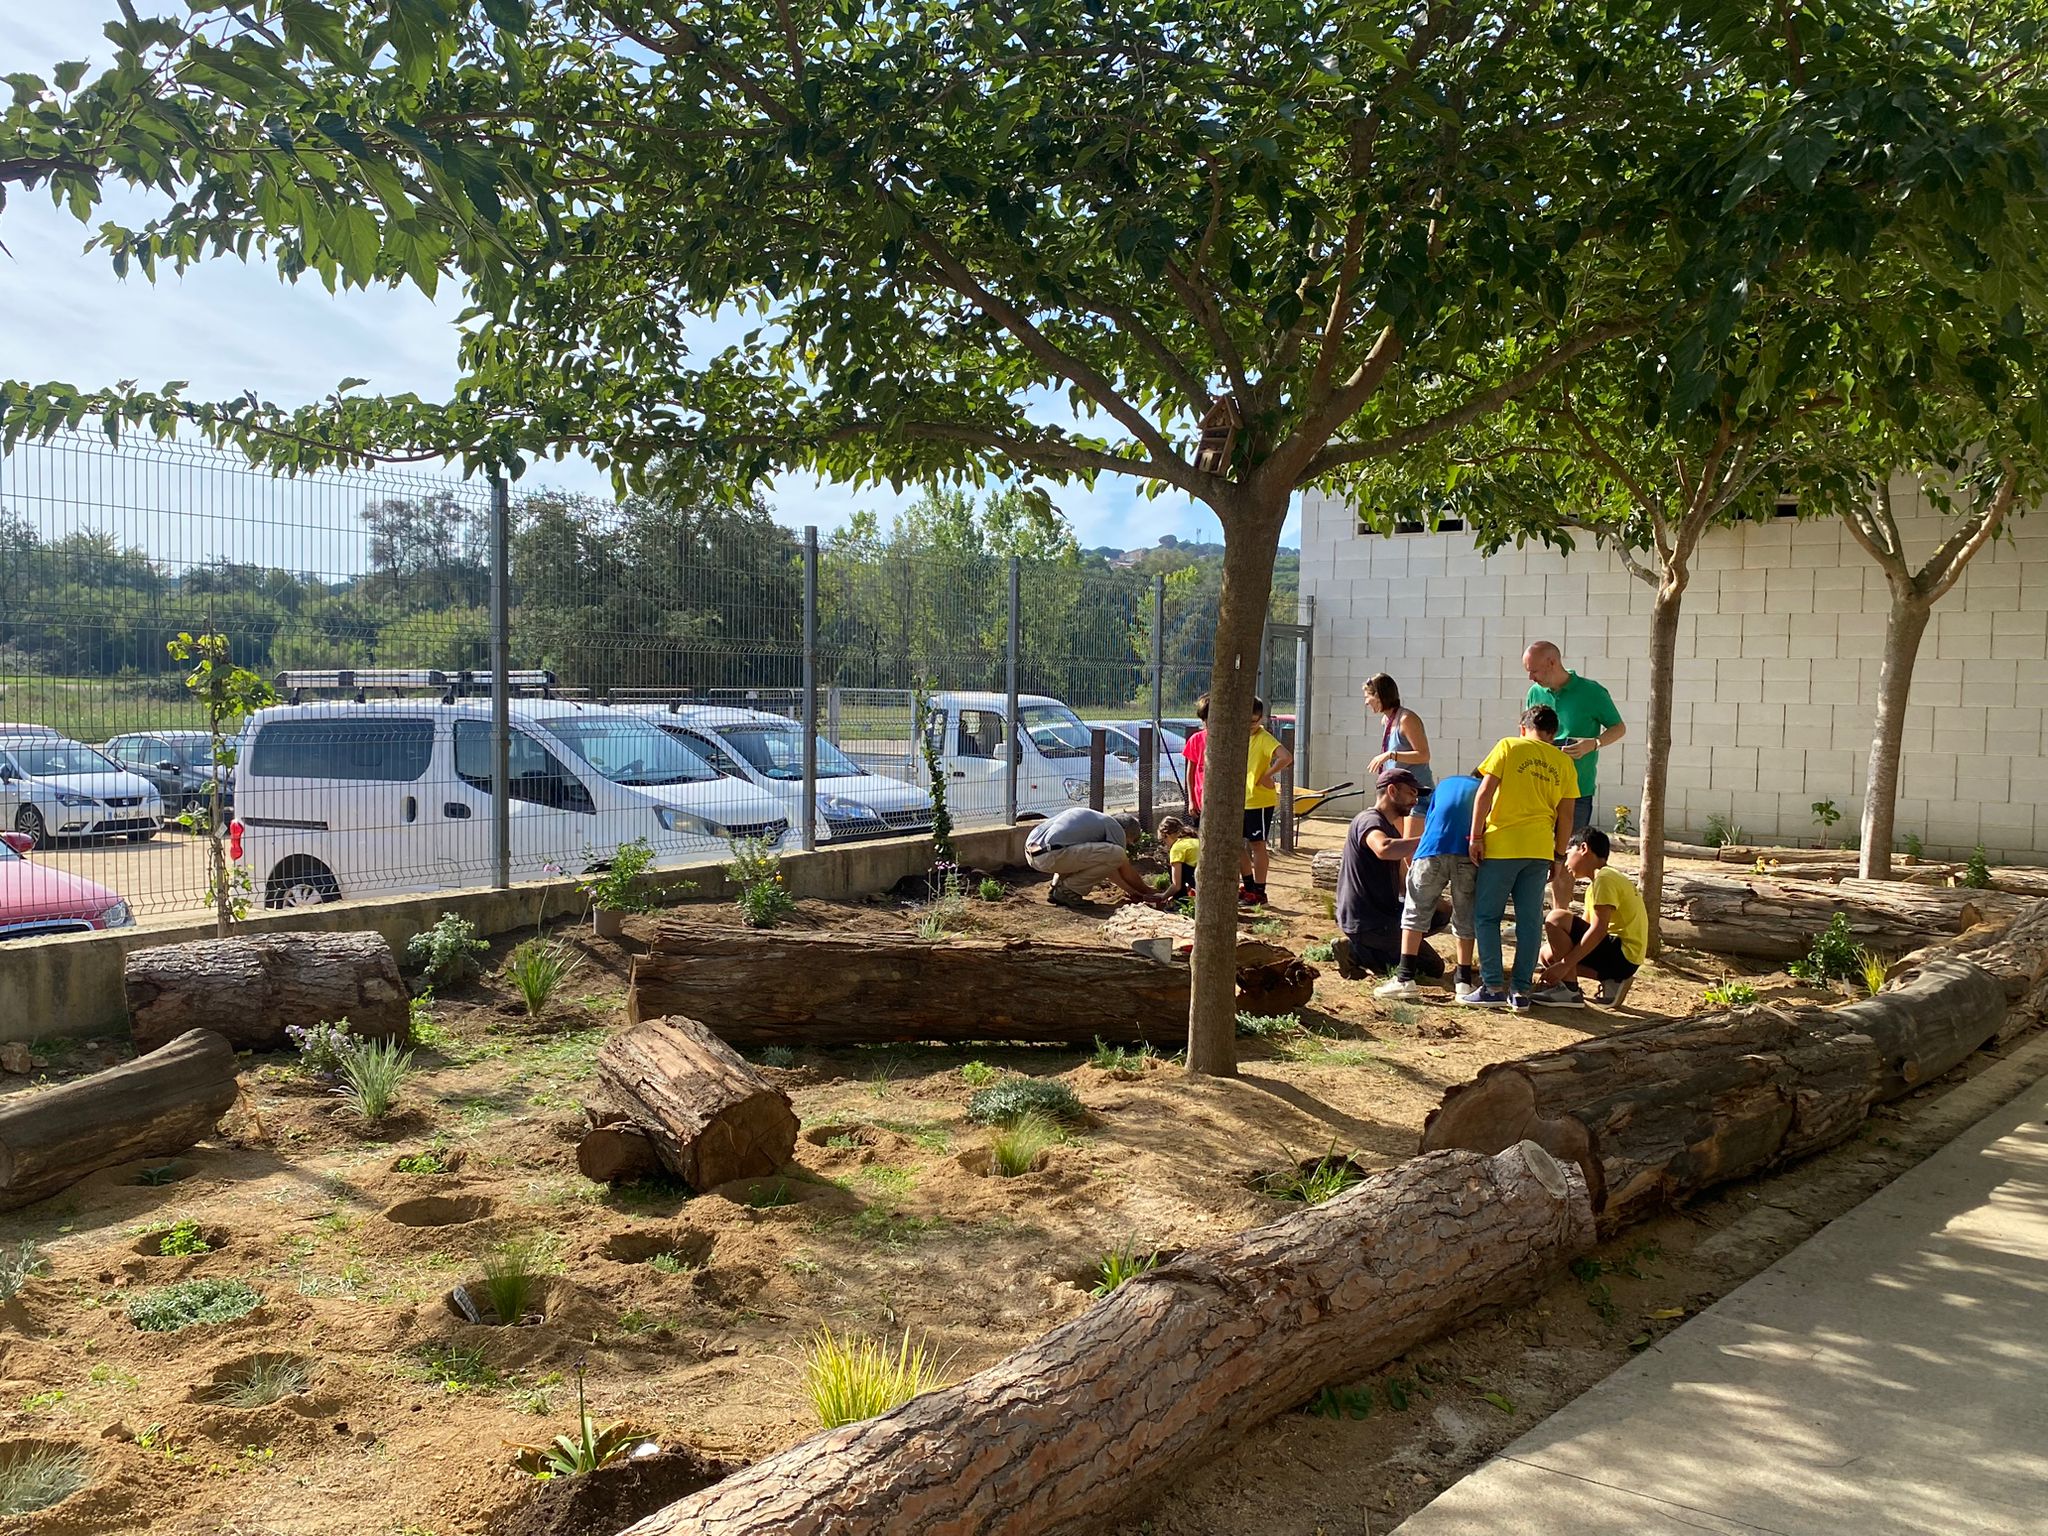 S'inicia un projecte formatiu de jardineria a l'Escola Ignasi Iglesias